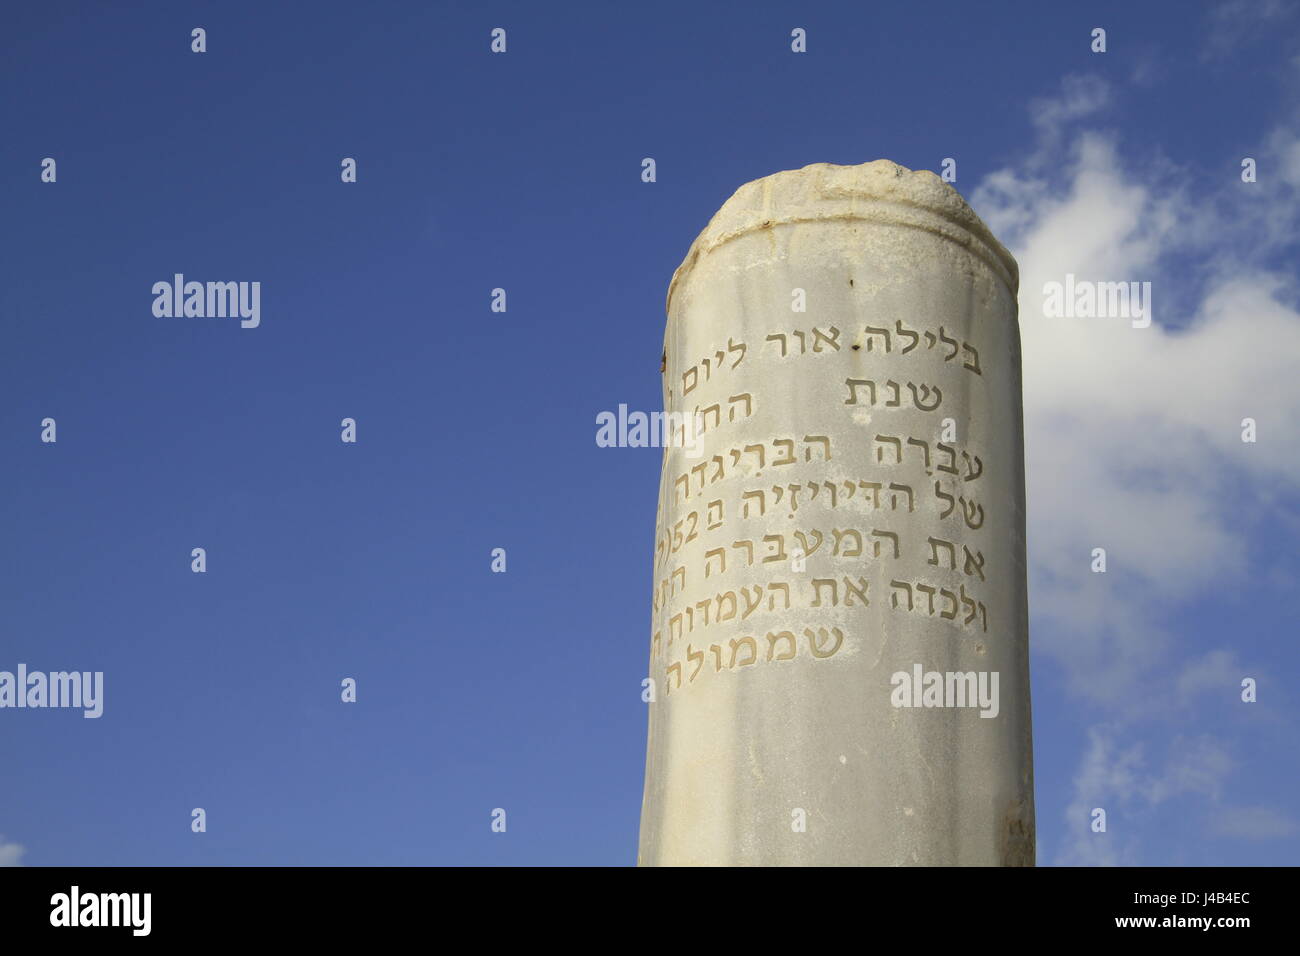 Israel, Tel Aviv, Hill Spalte, ein Denkmal für die britischen Streitkräfte Überfahrt des Flusses Yarkon im Jahre 1917 Stockfoto